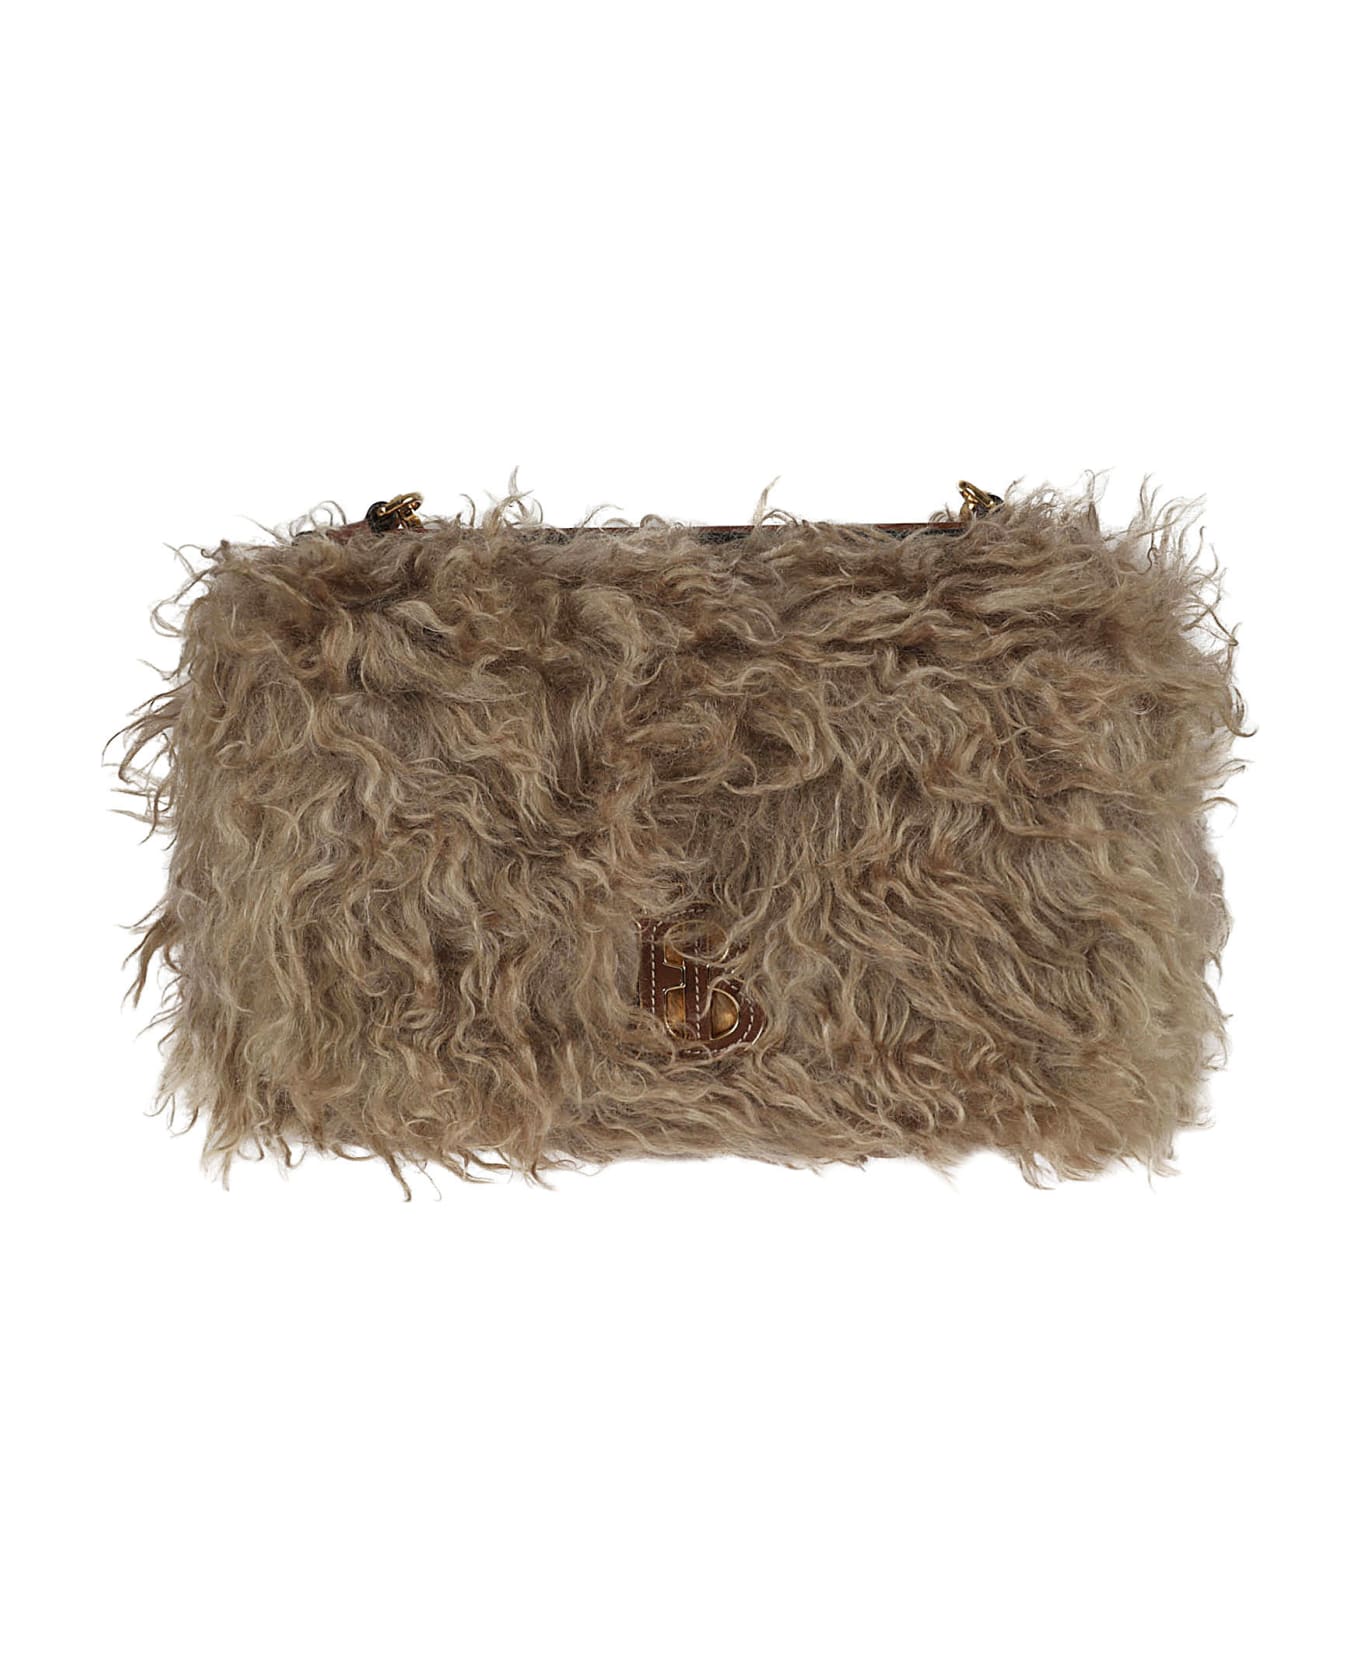 Burberry Furred Shoulder Bag - Camel